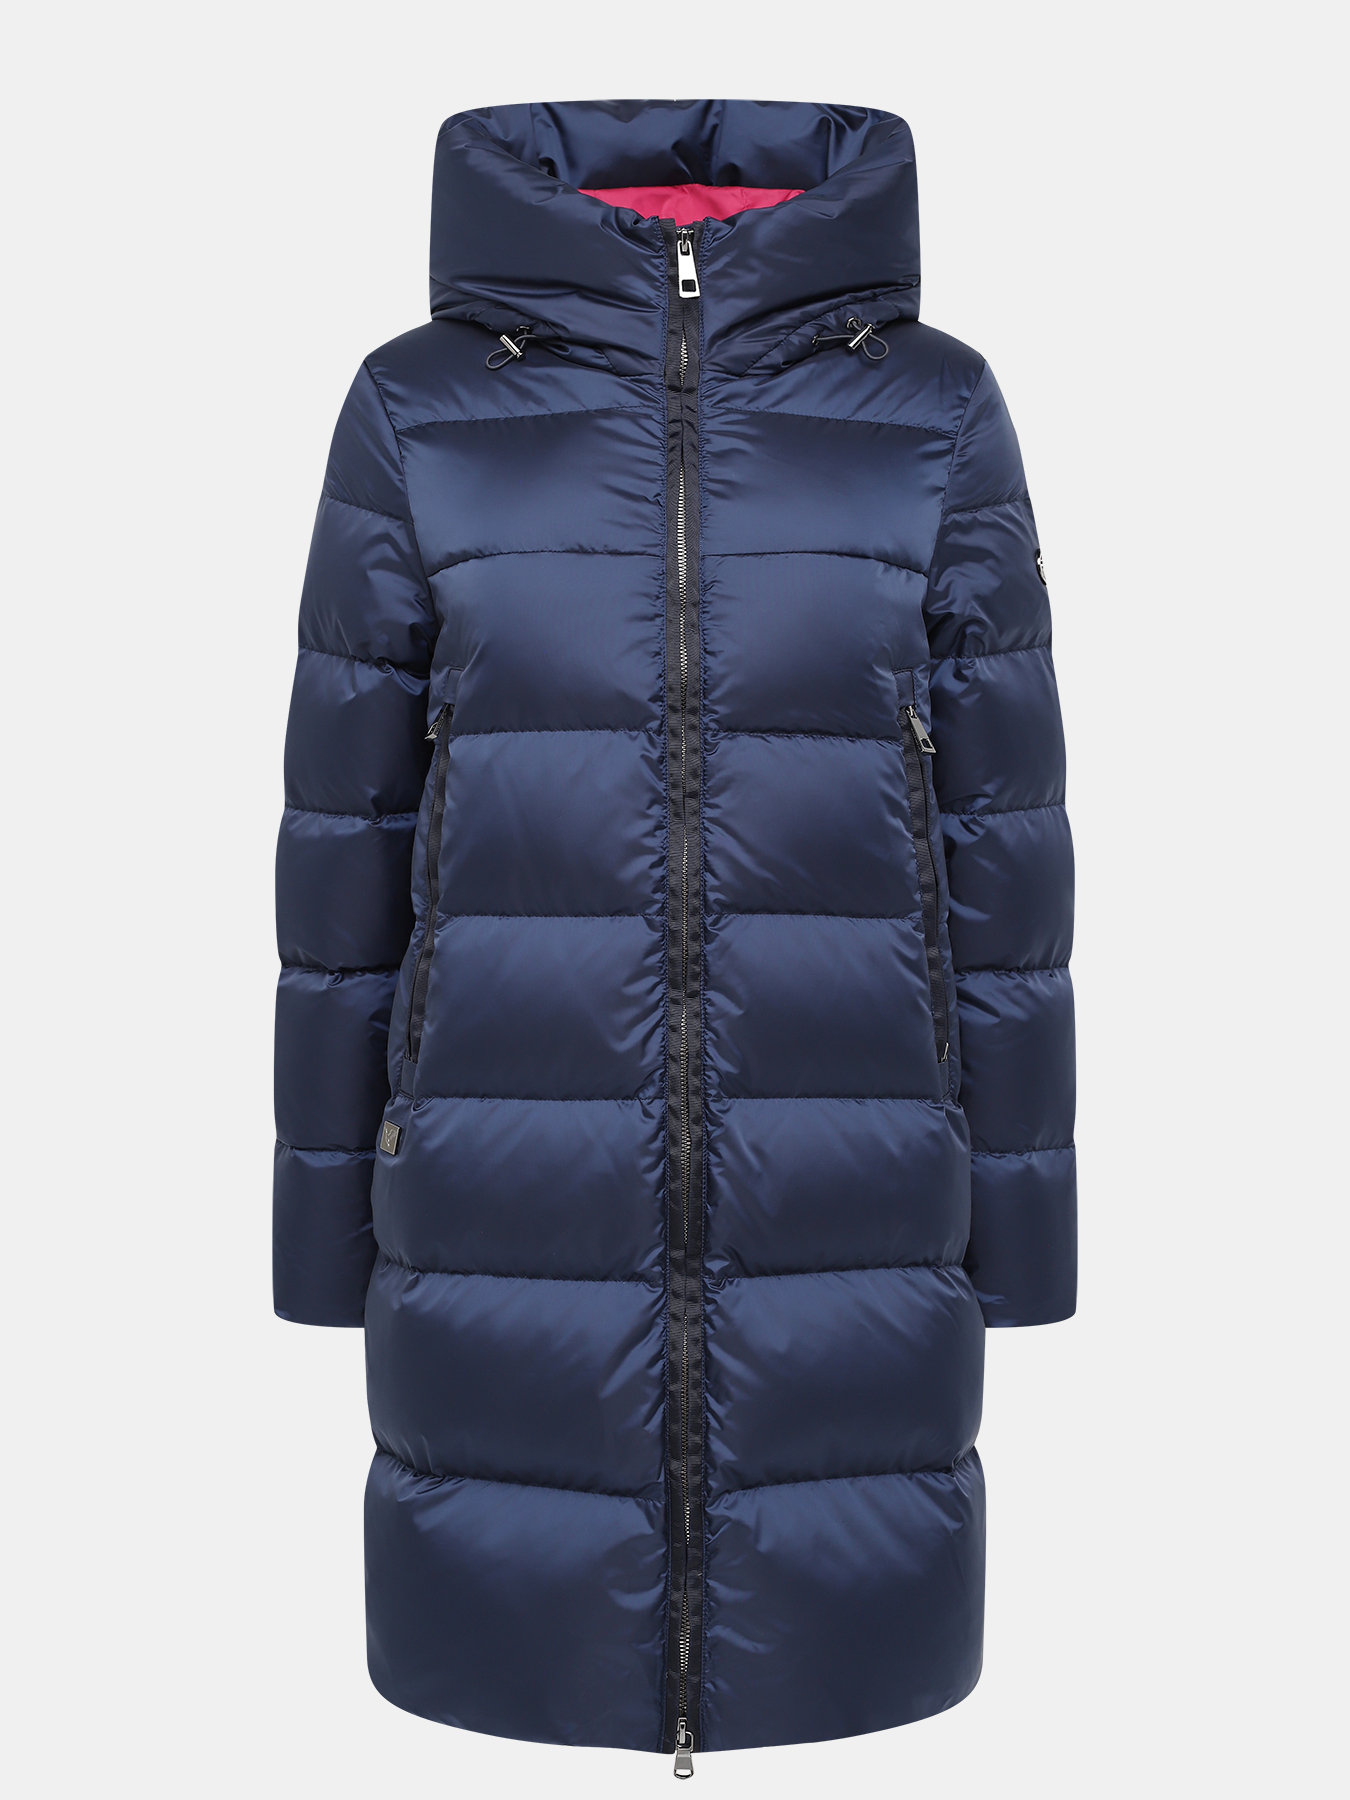 Пальто зимнее AVI 433529-021, цвет синий, размер 46